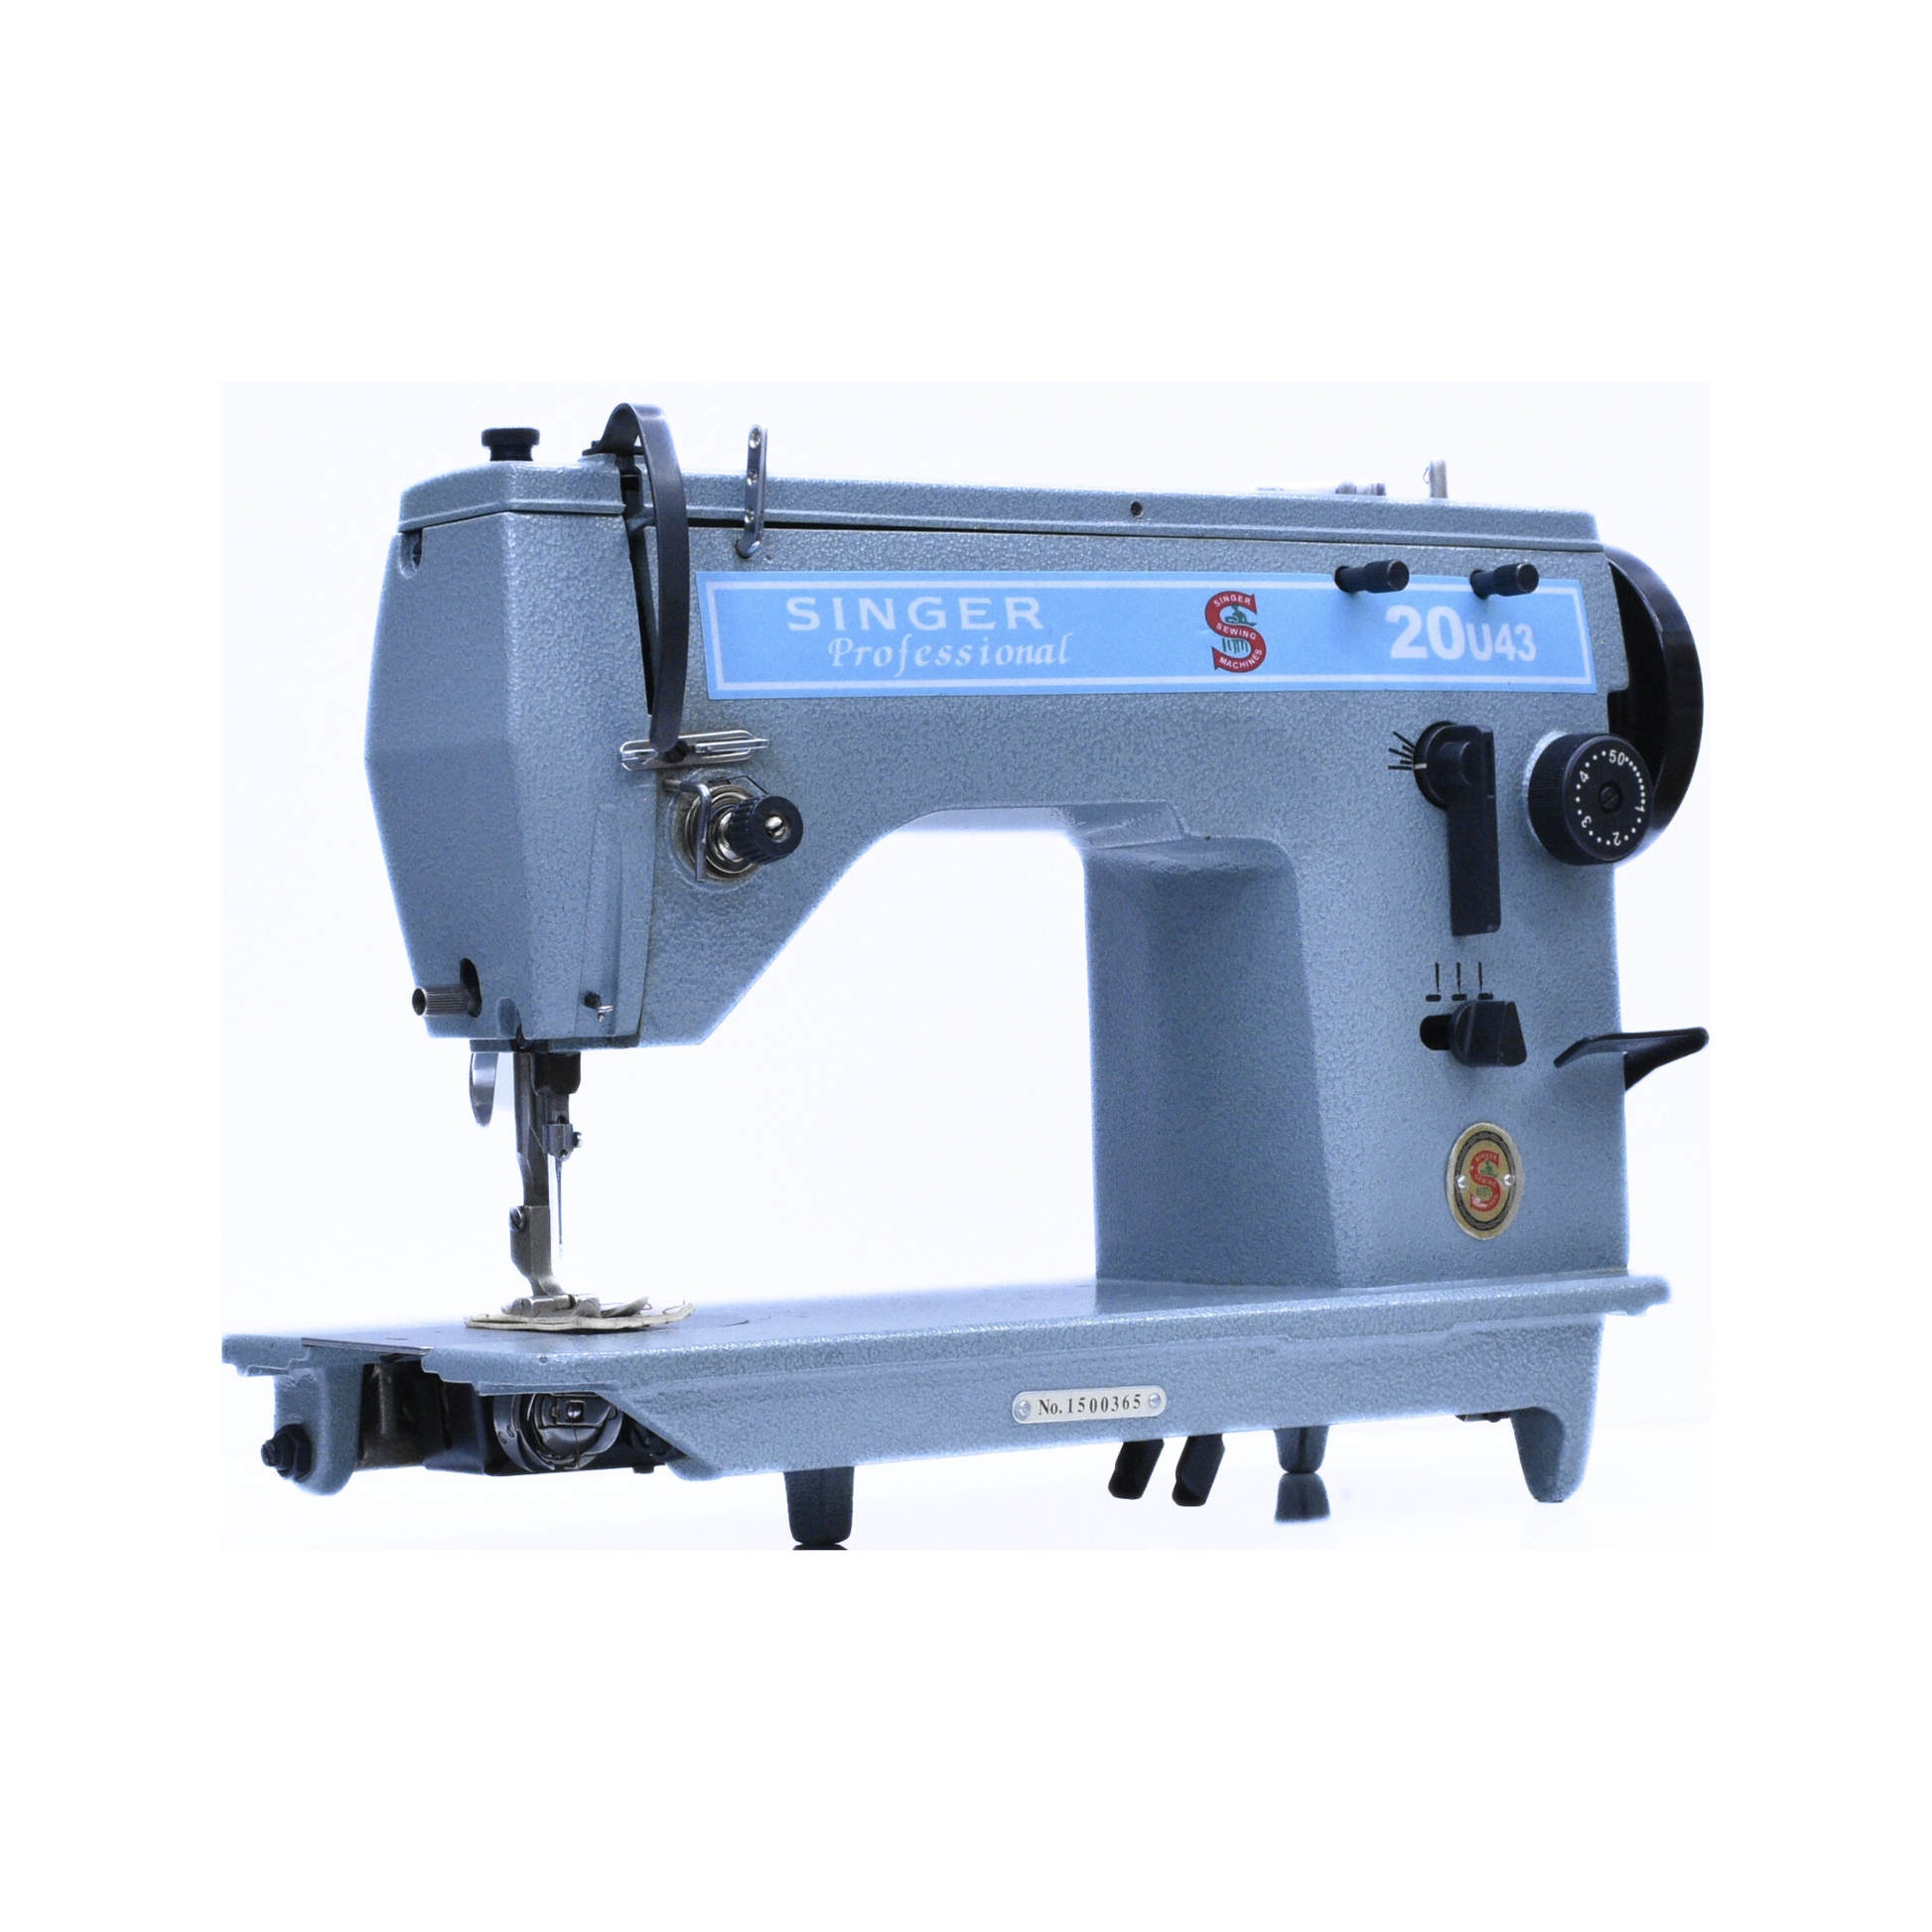 Singer 20U43 zigzag machine - Sewing machine - Blue - Side view